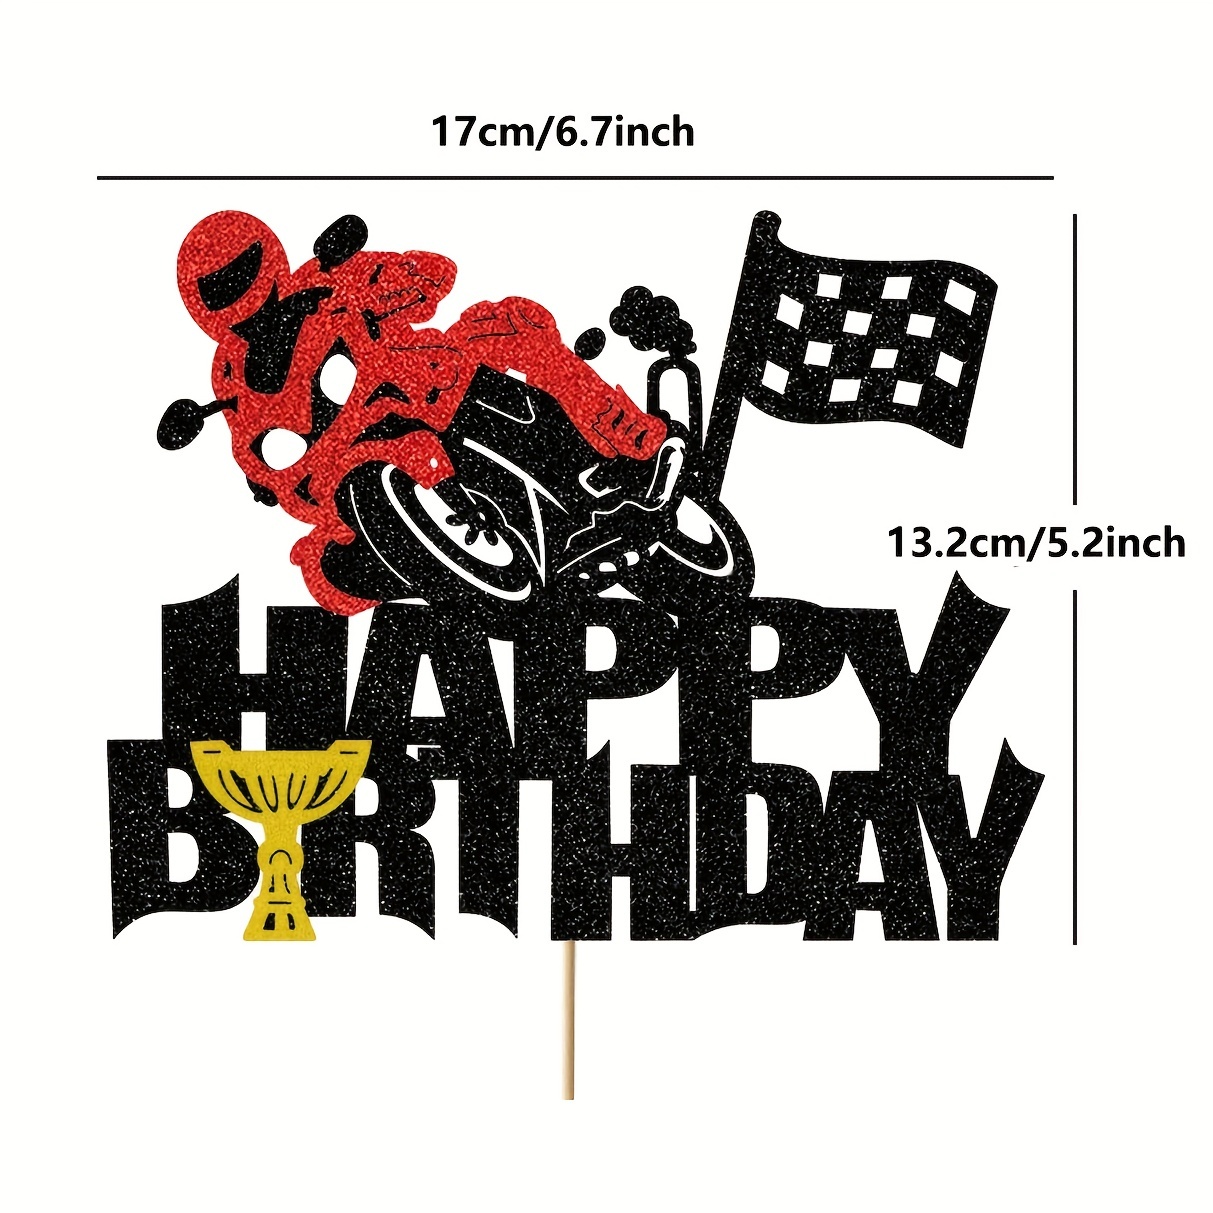 Motocicleta corrida tema bolo de aniversário topper esportes